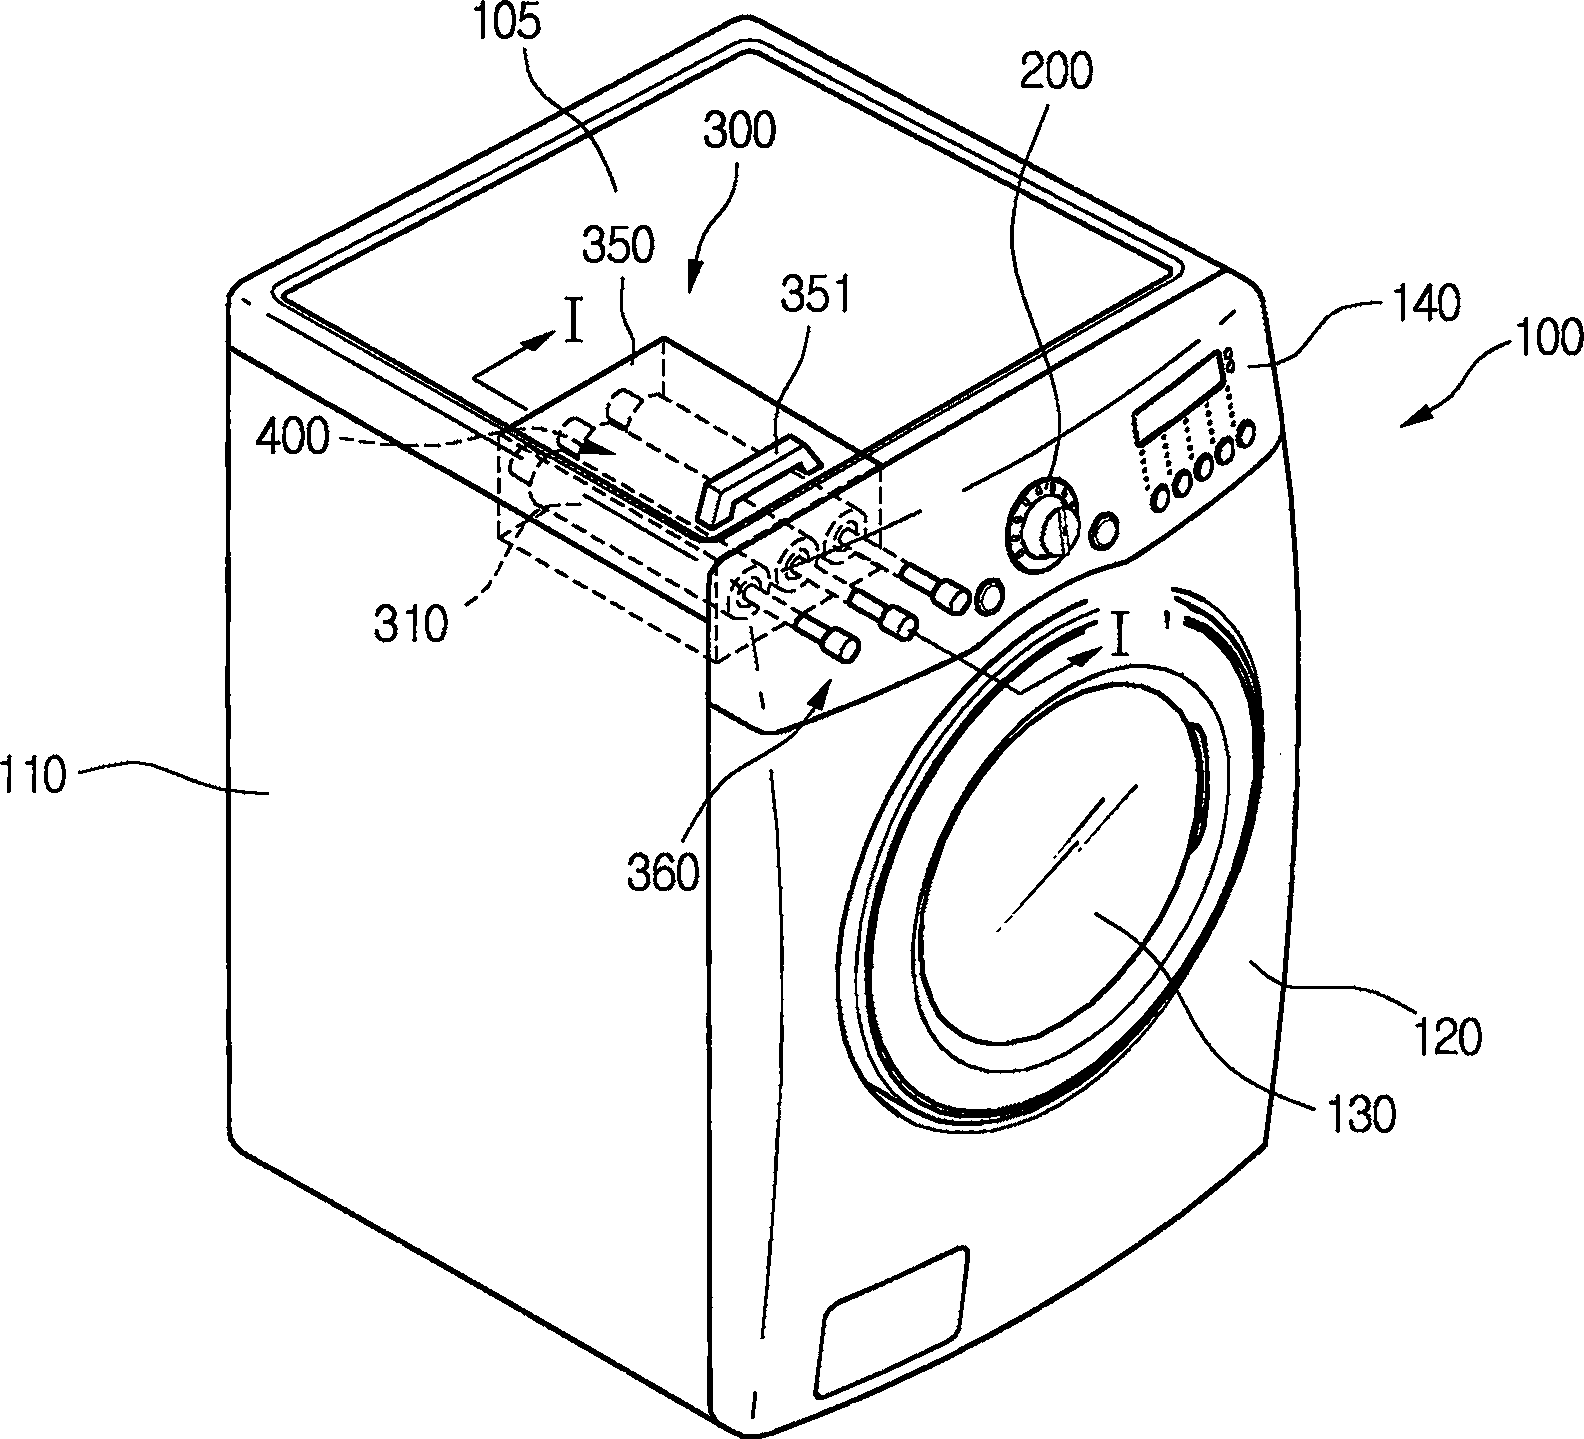 Detergent dispensing apparatus of washing machine